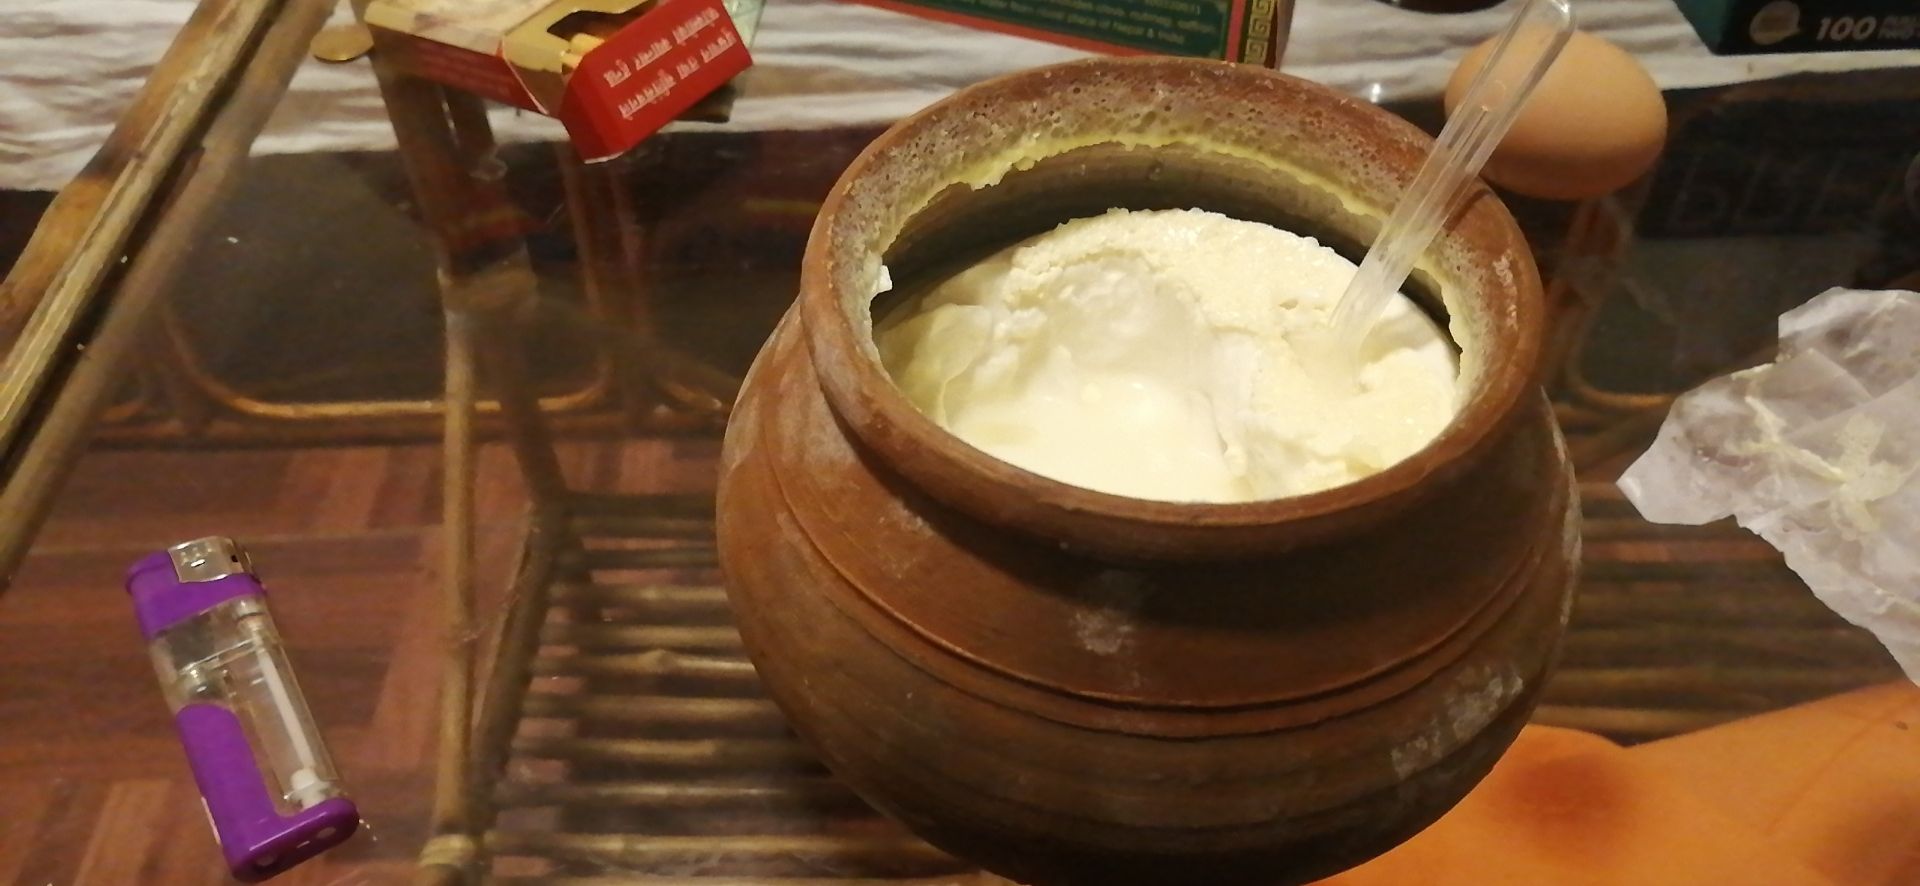 尼泊尔的酸奶，味道非常棒呀。